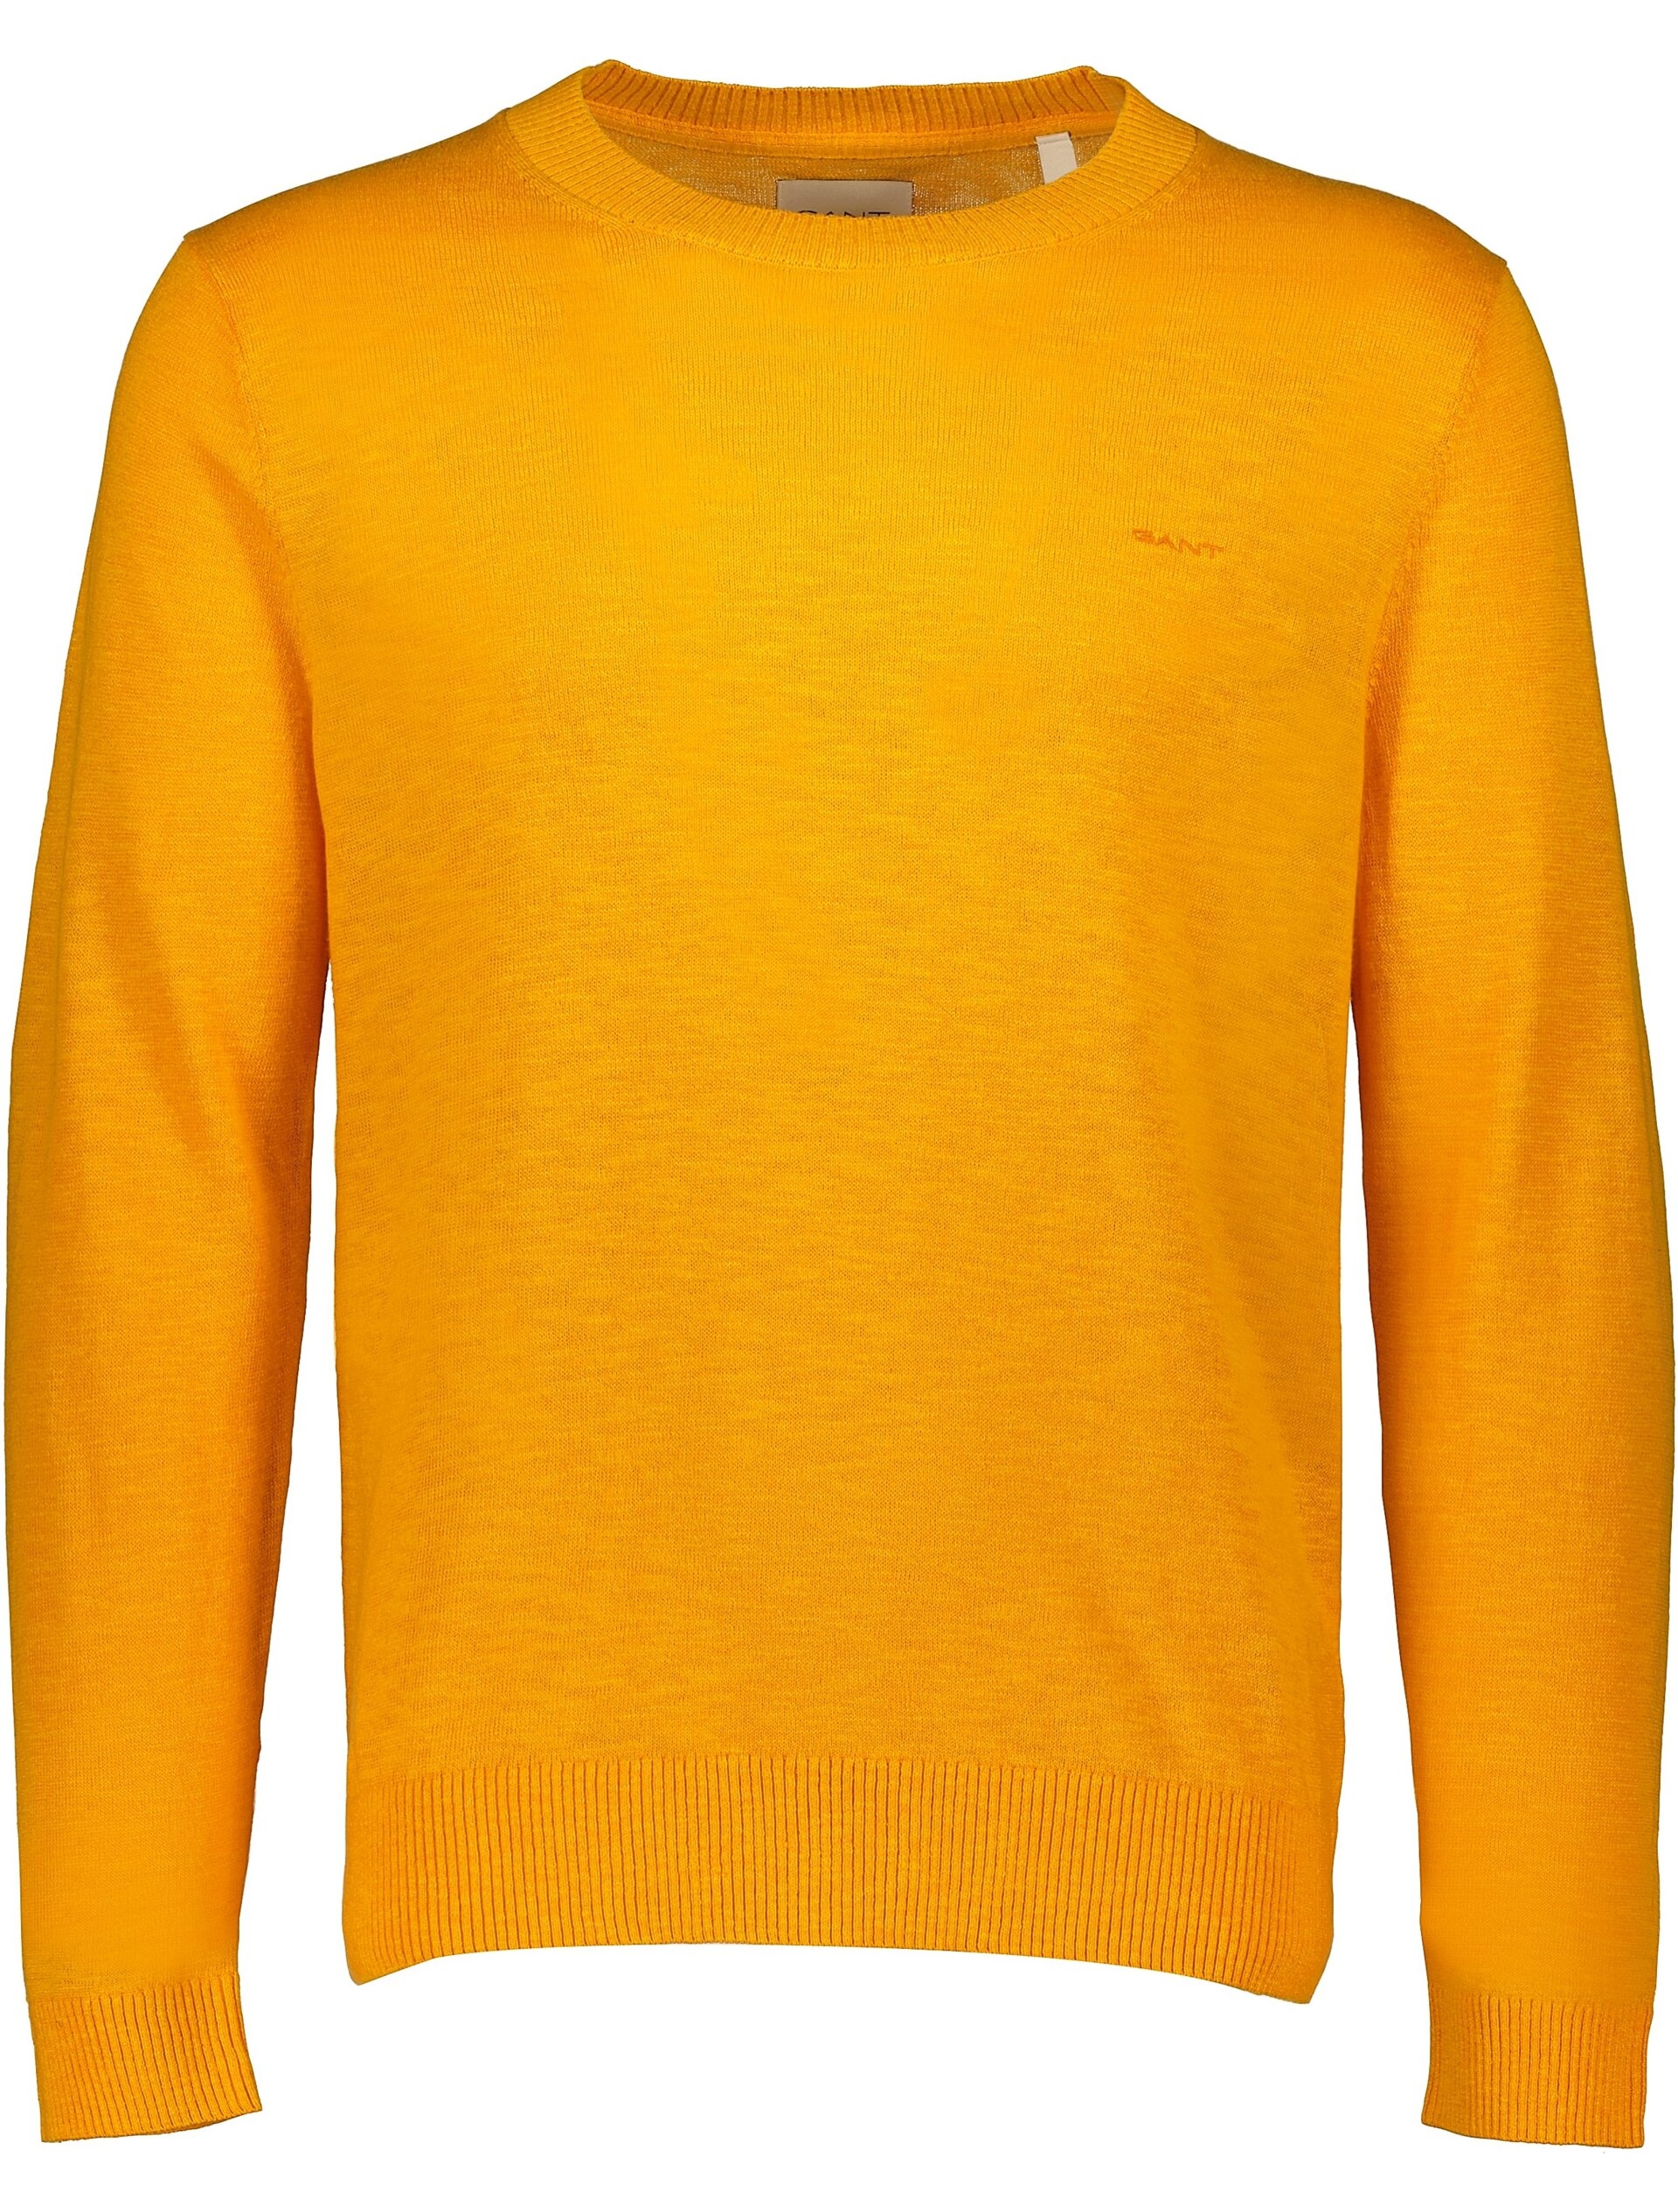 Gant Strik orange / 779 medal yellow